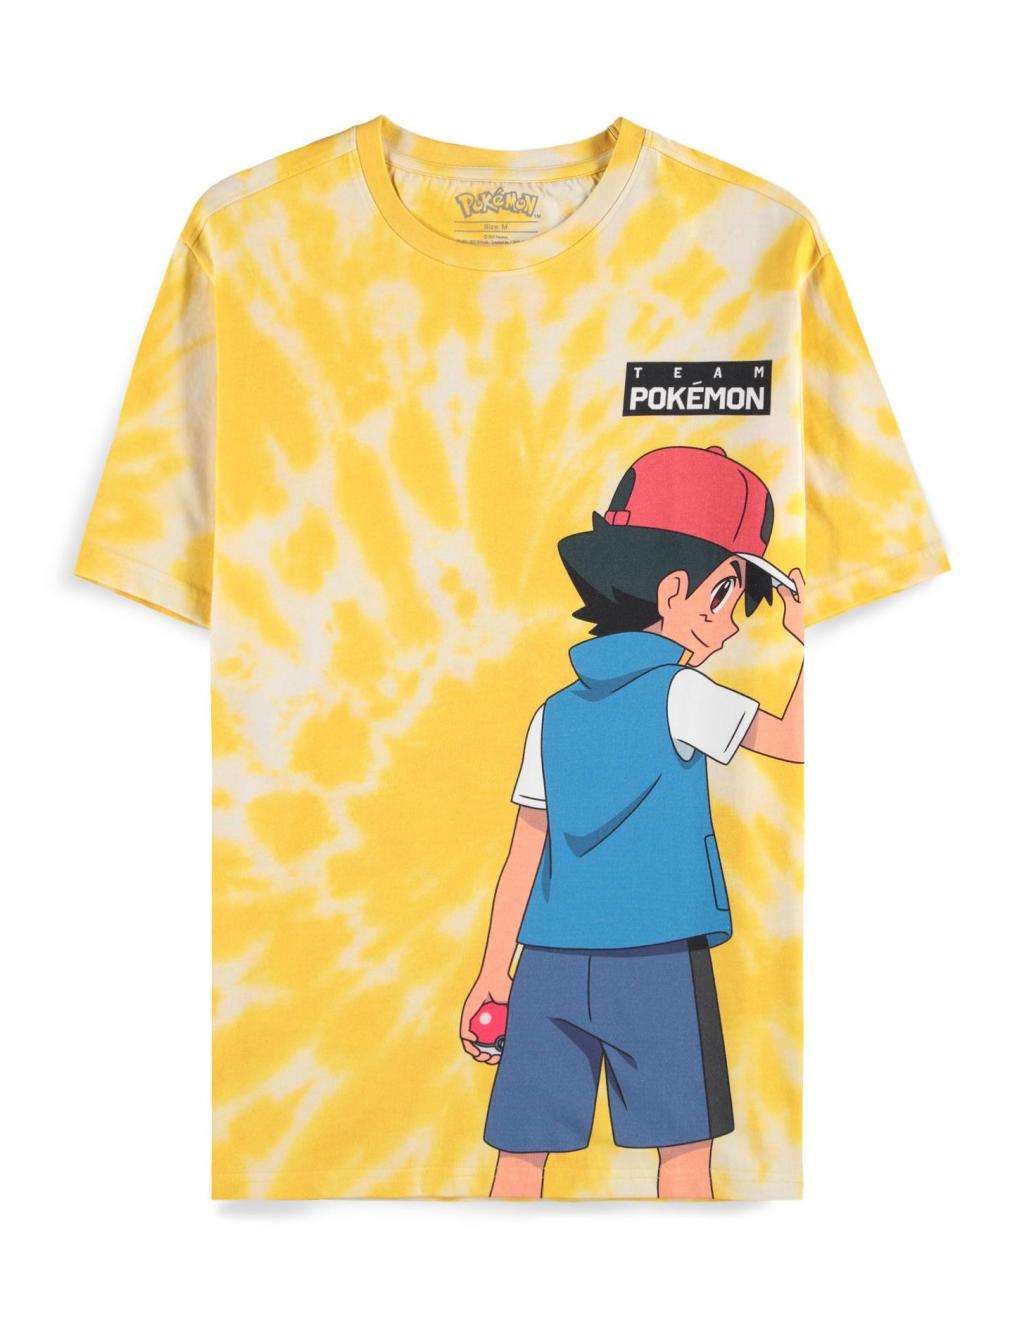 POKEMON - Ash and Pikachu - Men's T-shirt (XL)